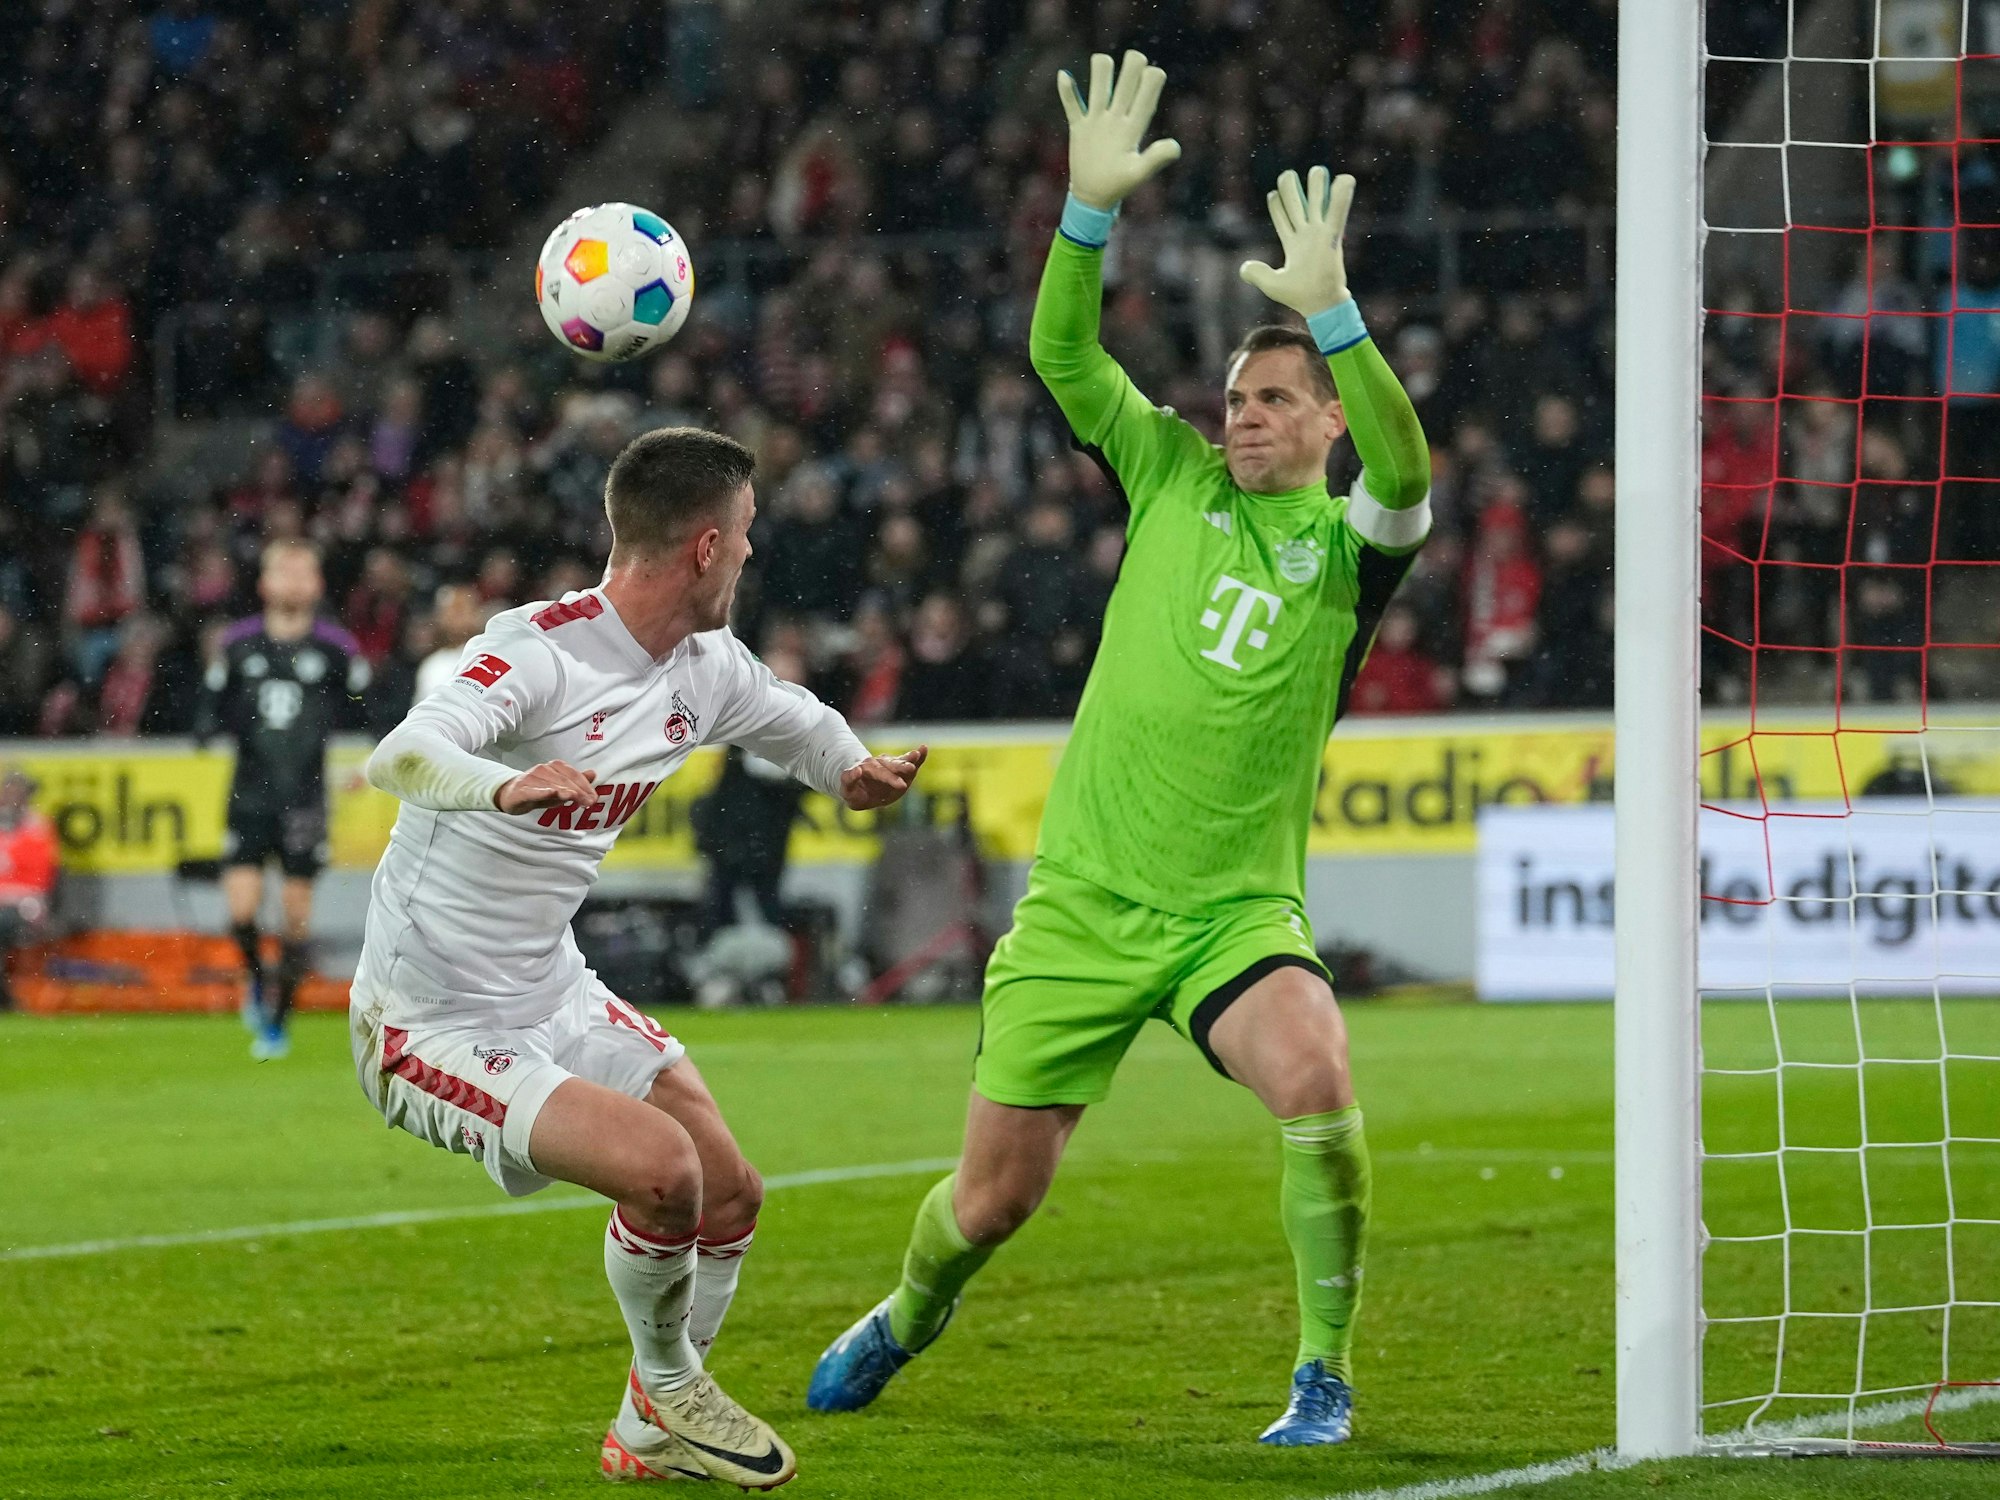 Kölns Rasmus Carstensen versucht einen Kopfball gegen Manuel Neuer.